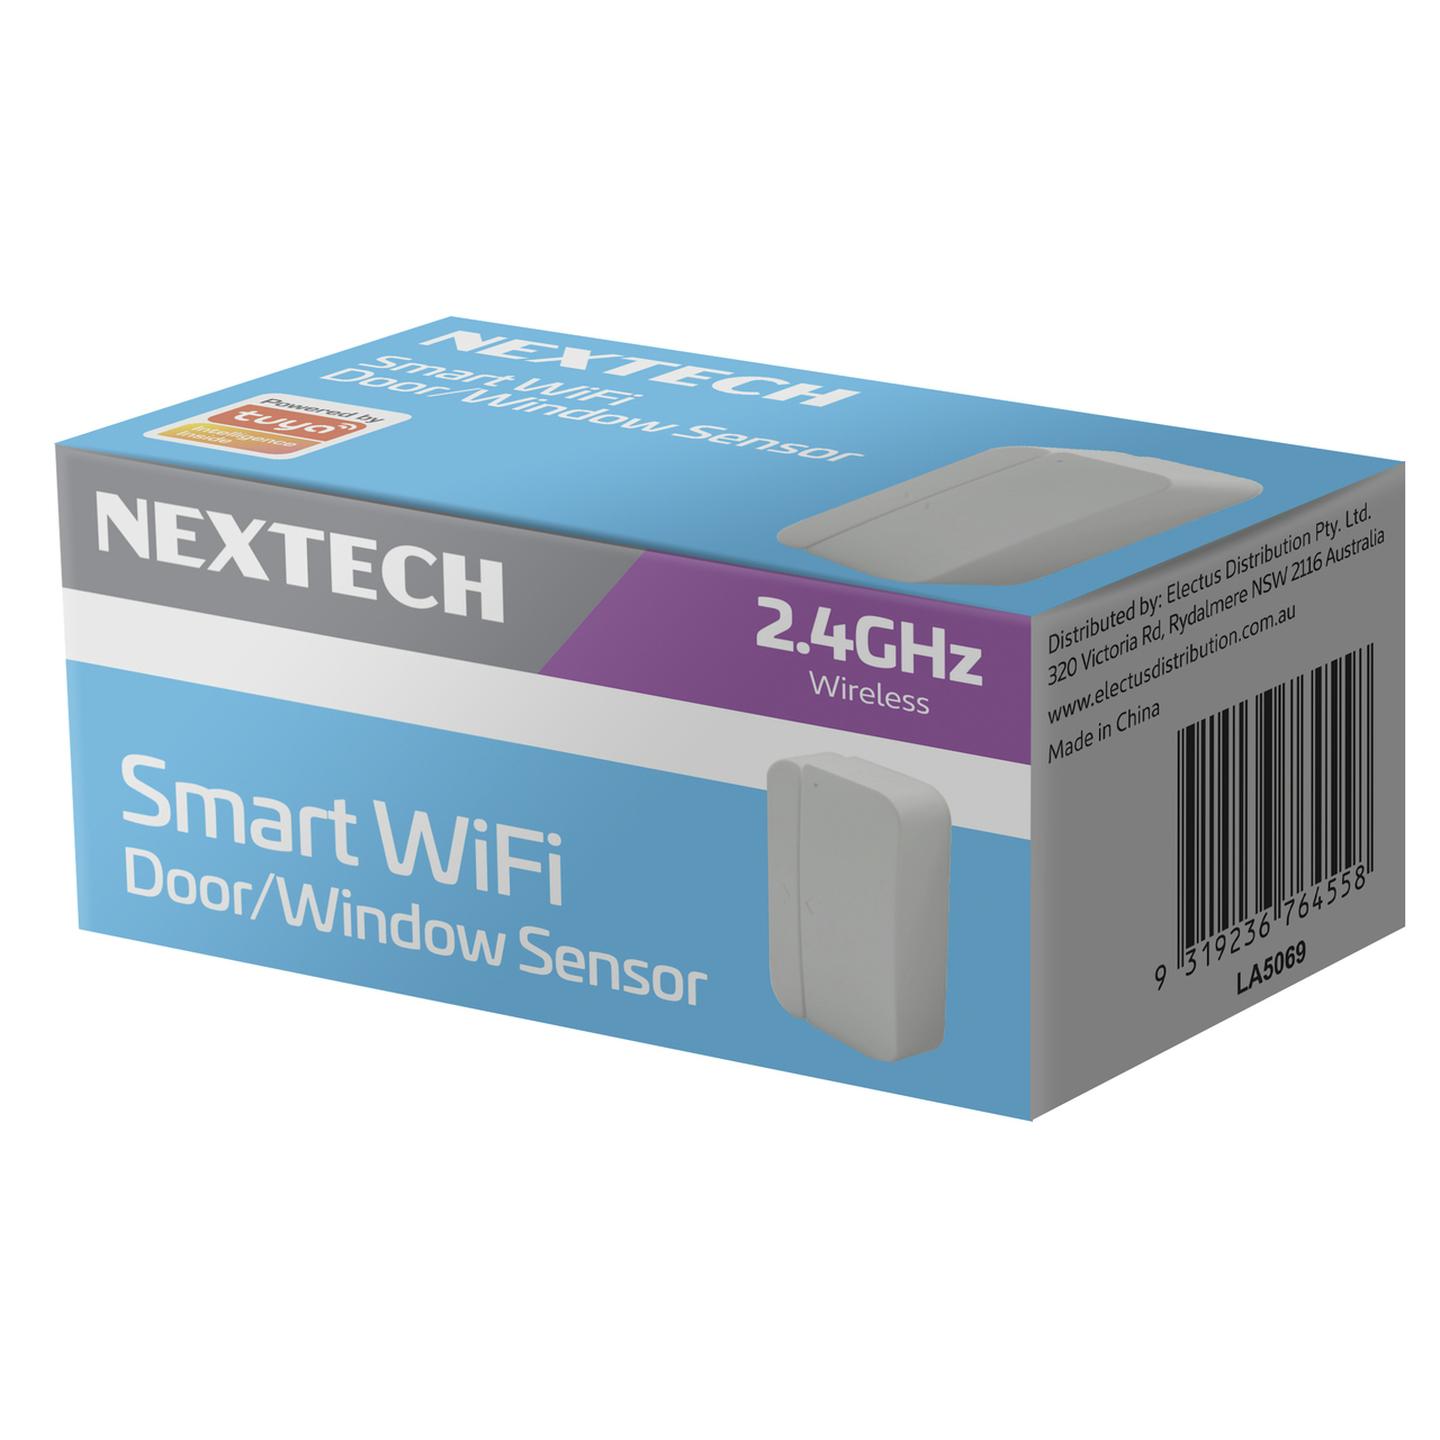 Smart Wi-Fi Door/Window Sensor - Smart Life Compatible